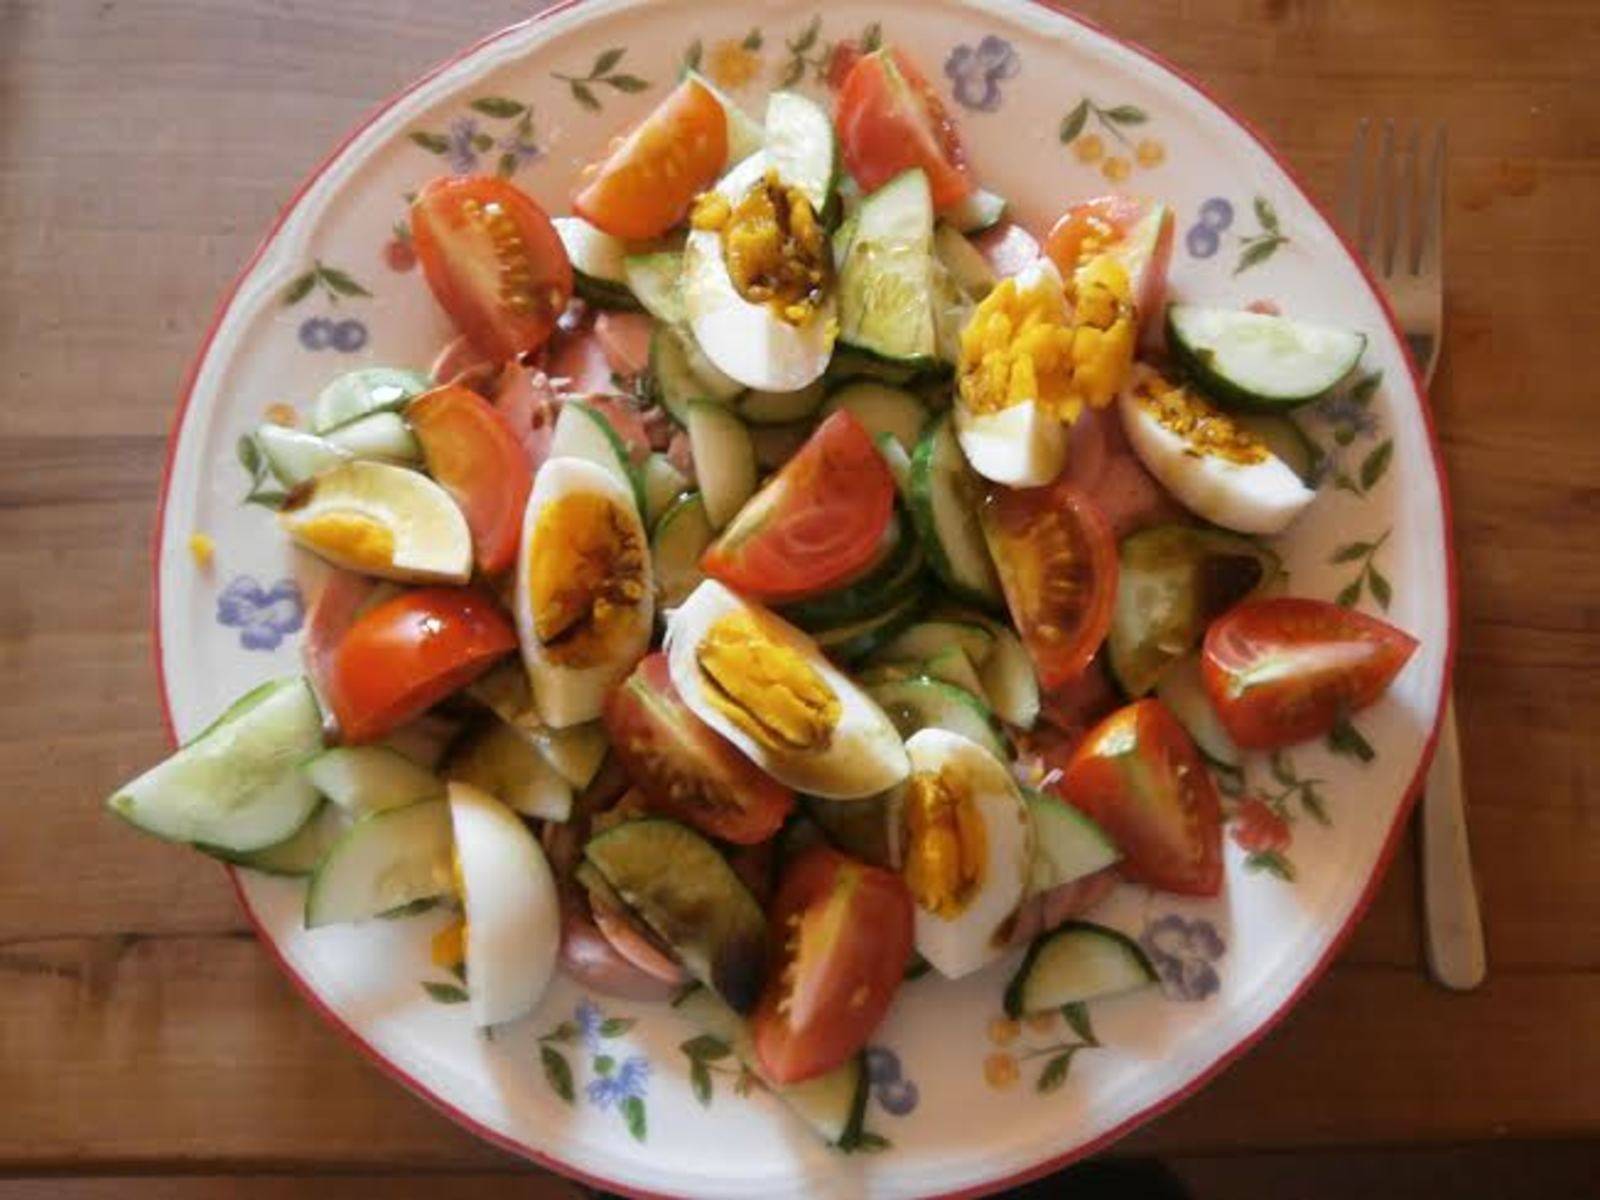 Salat für heiße Tage